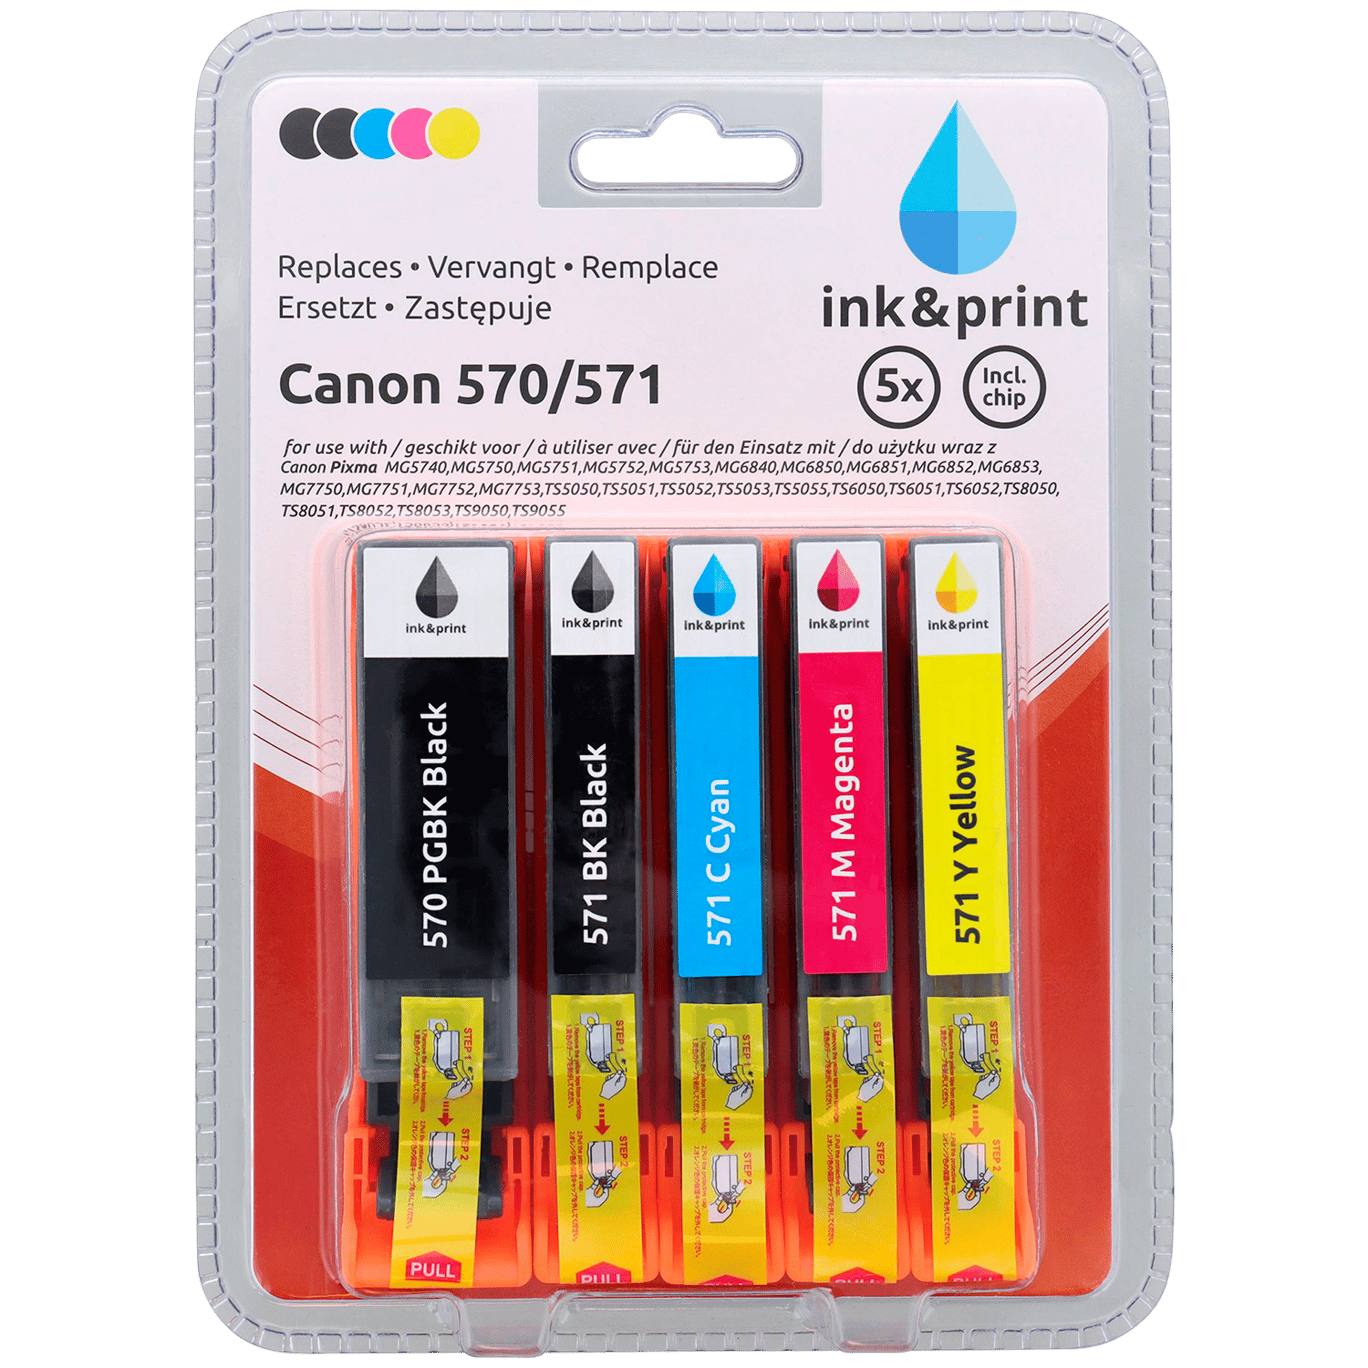 Geruststellen klif Consequent Ink & Print inktcartridges | Action.com